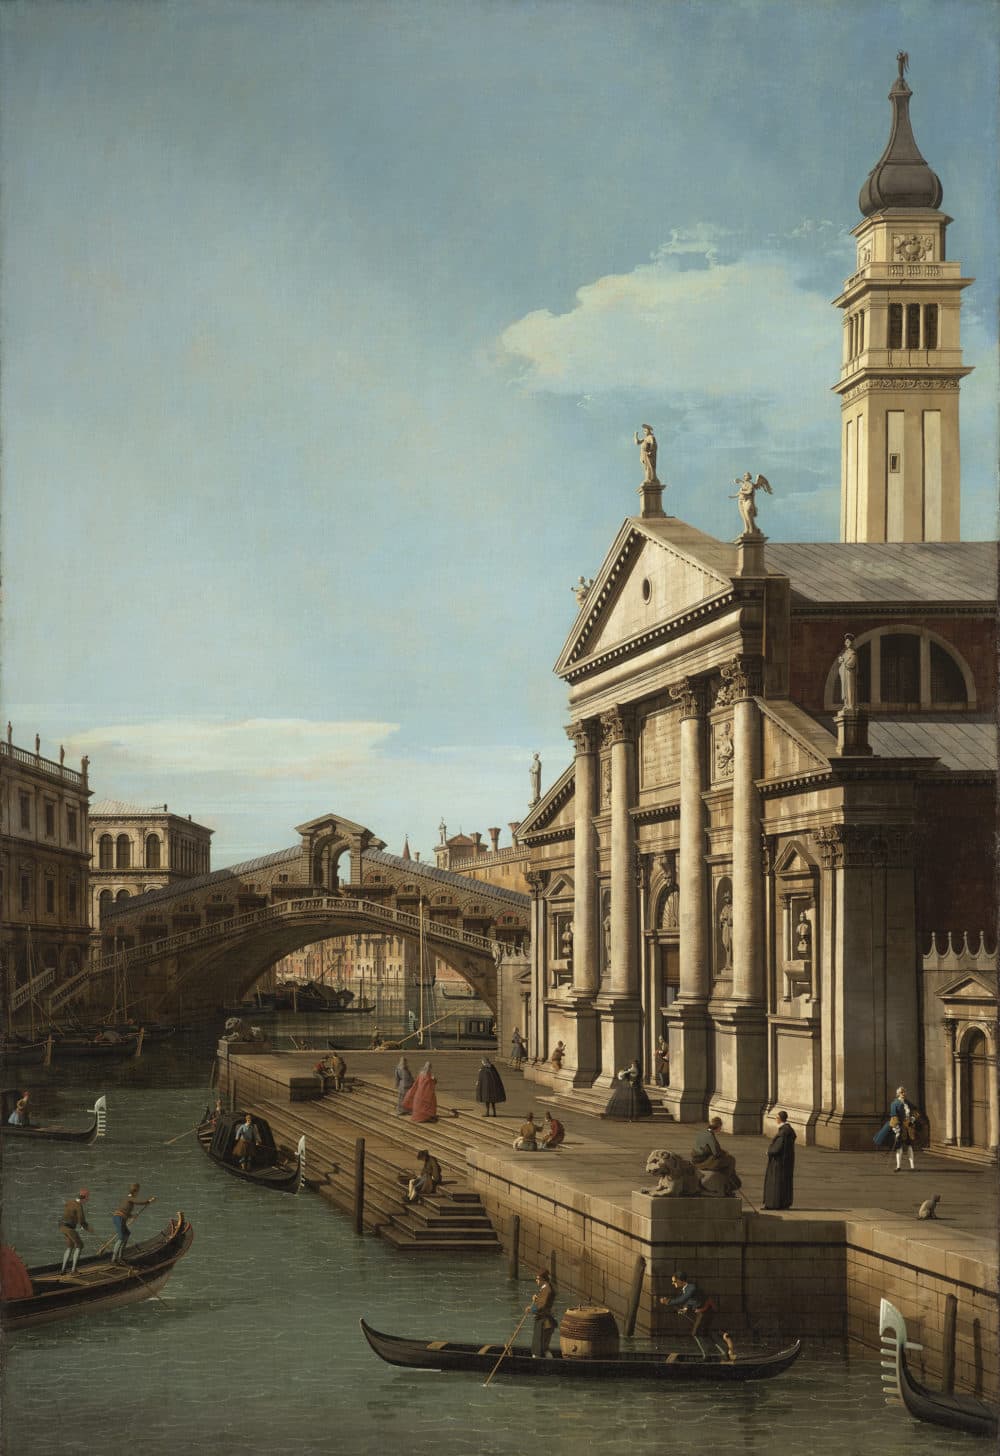 Capriccio: The Rialto Bridge and the Church of S. Giorgio Maggiore. (North Carolina Museum of Art)